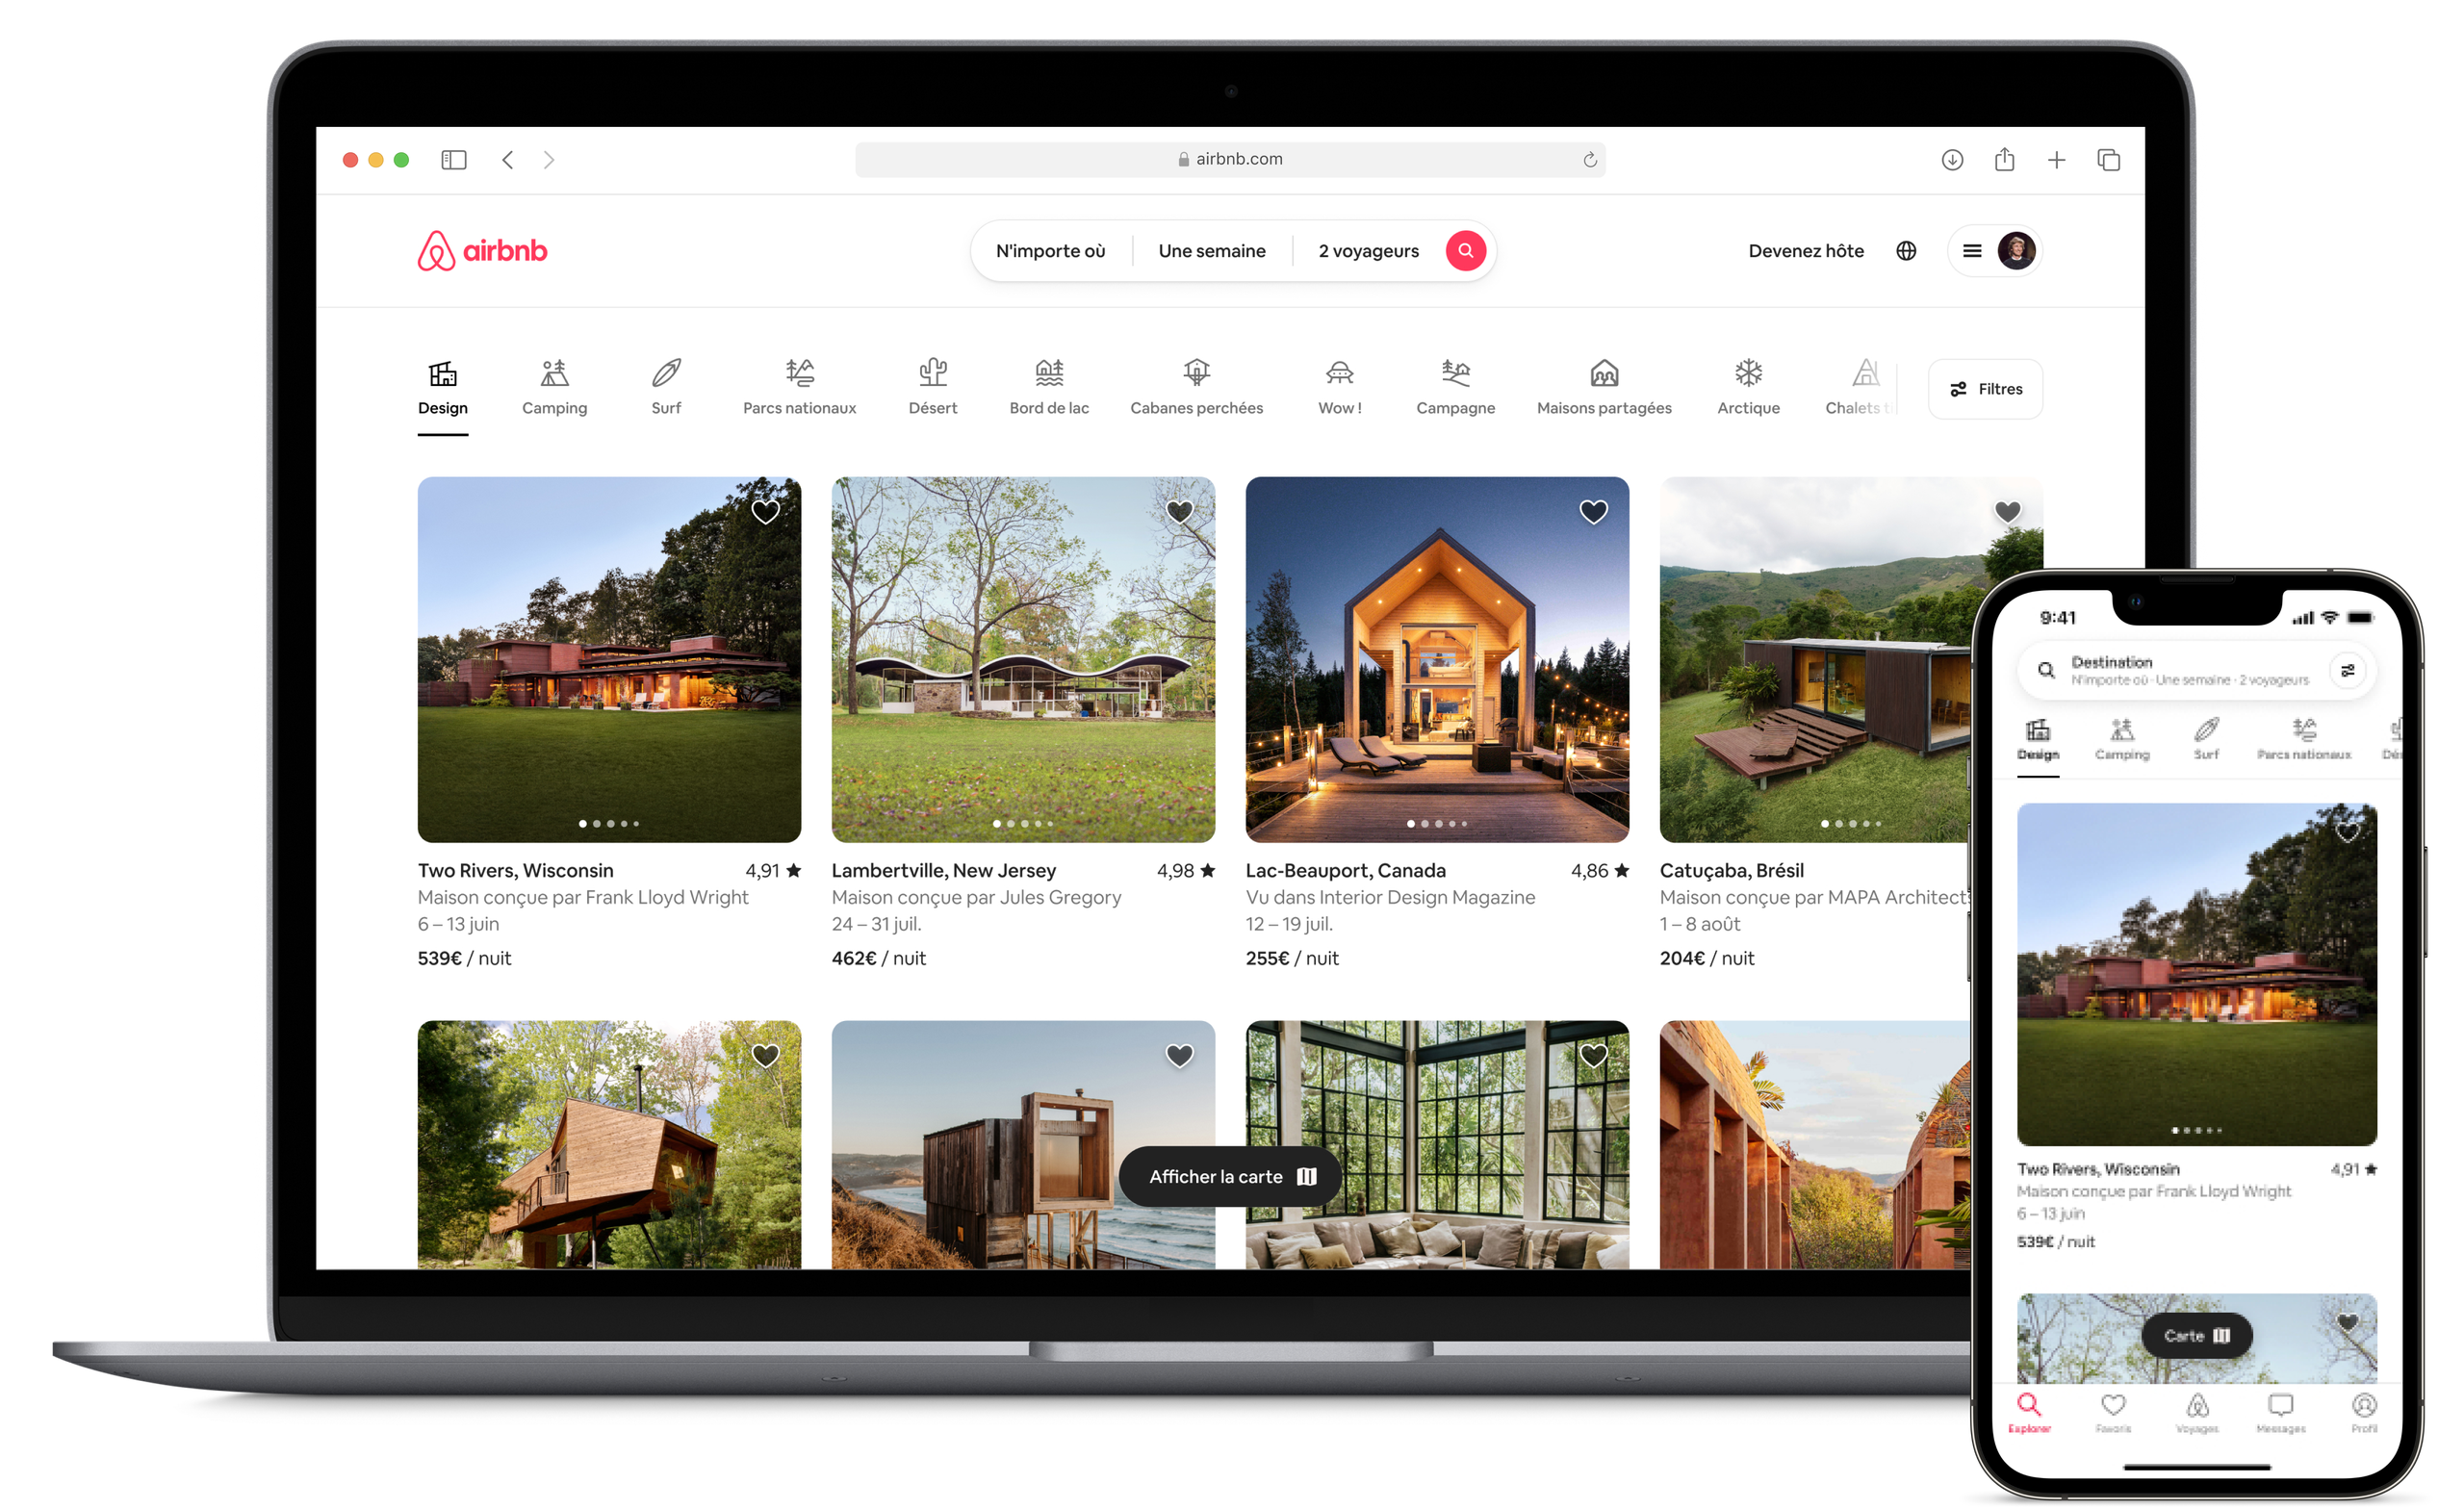 Un ordinateur portable ouvert et un téléphone portable montrent la nouvelle page d'accueil Airbnb, où sont affichées les photos des annonces de la catégorie Design d'Airbnb. Une rangée d'icônes en haut de la page présente les différentes catégories qu'un voyageur peut parcourir.